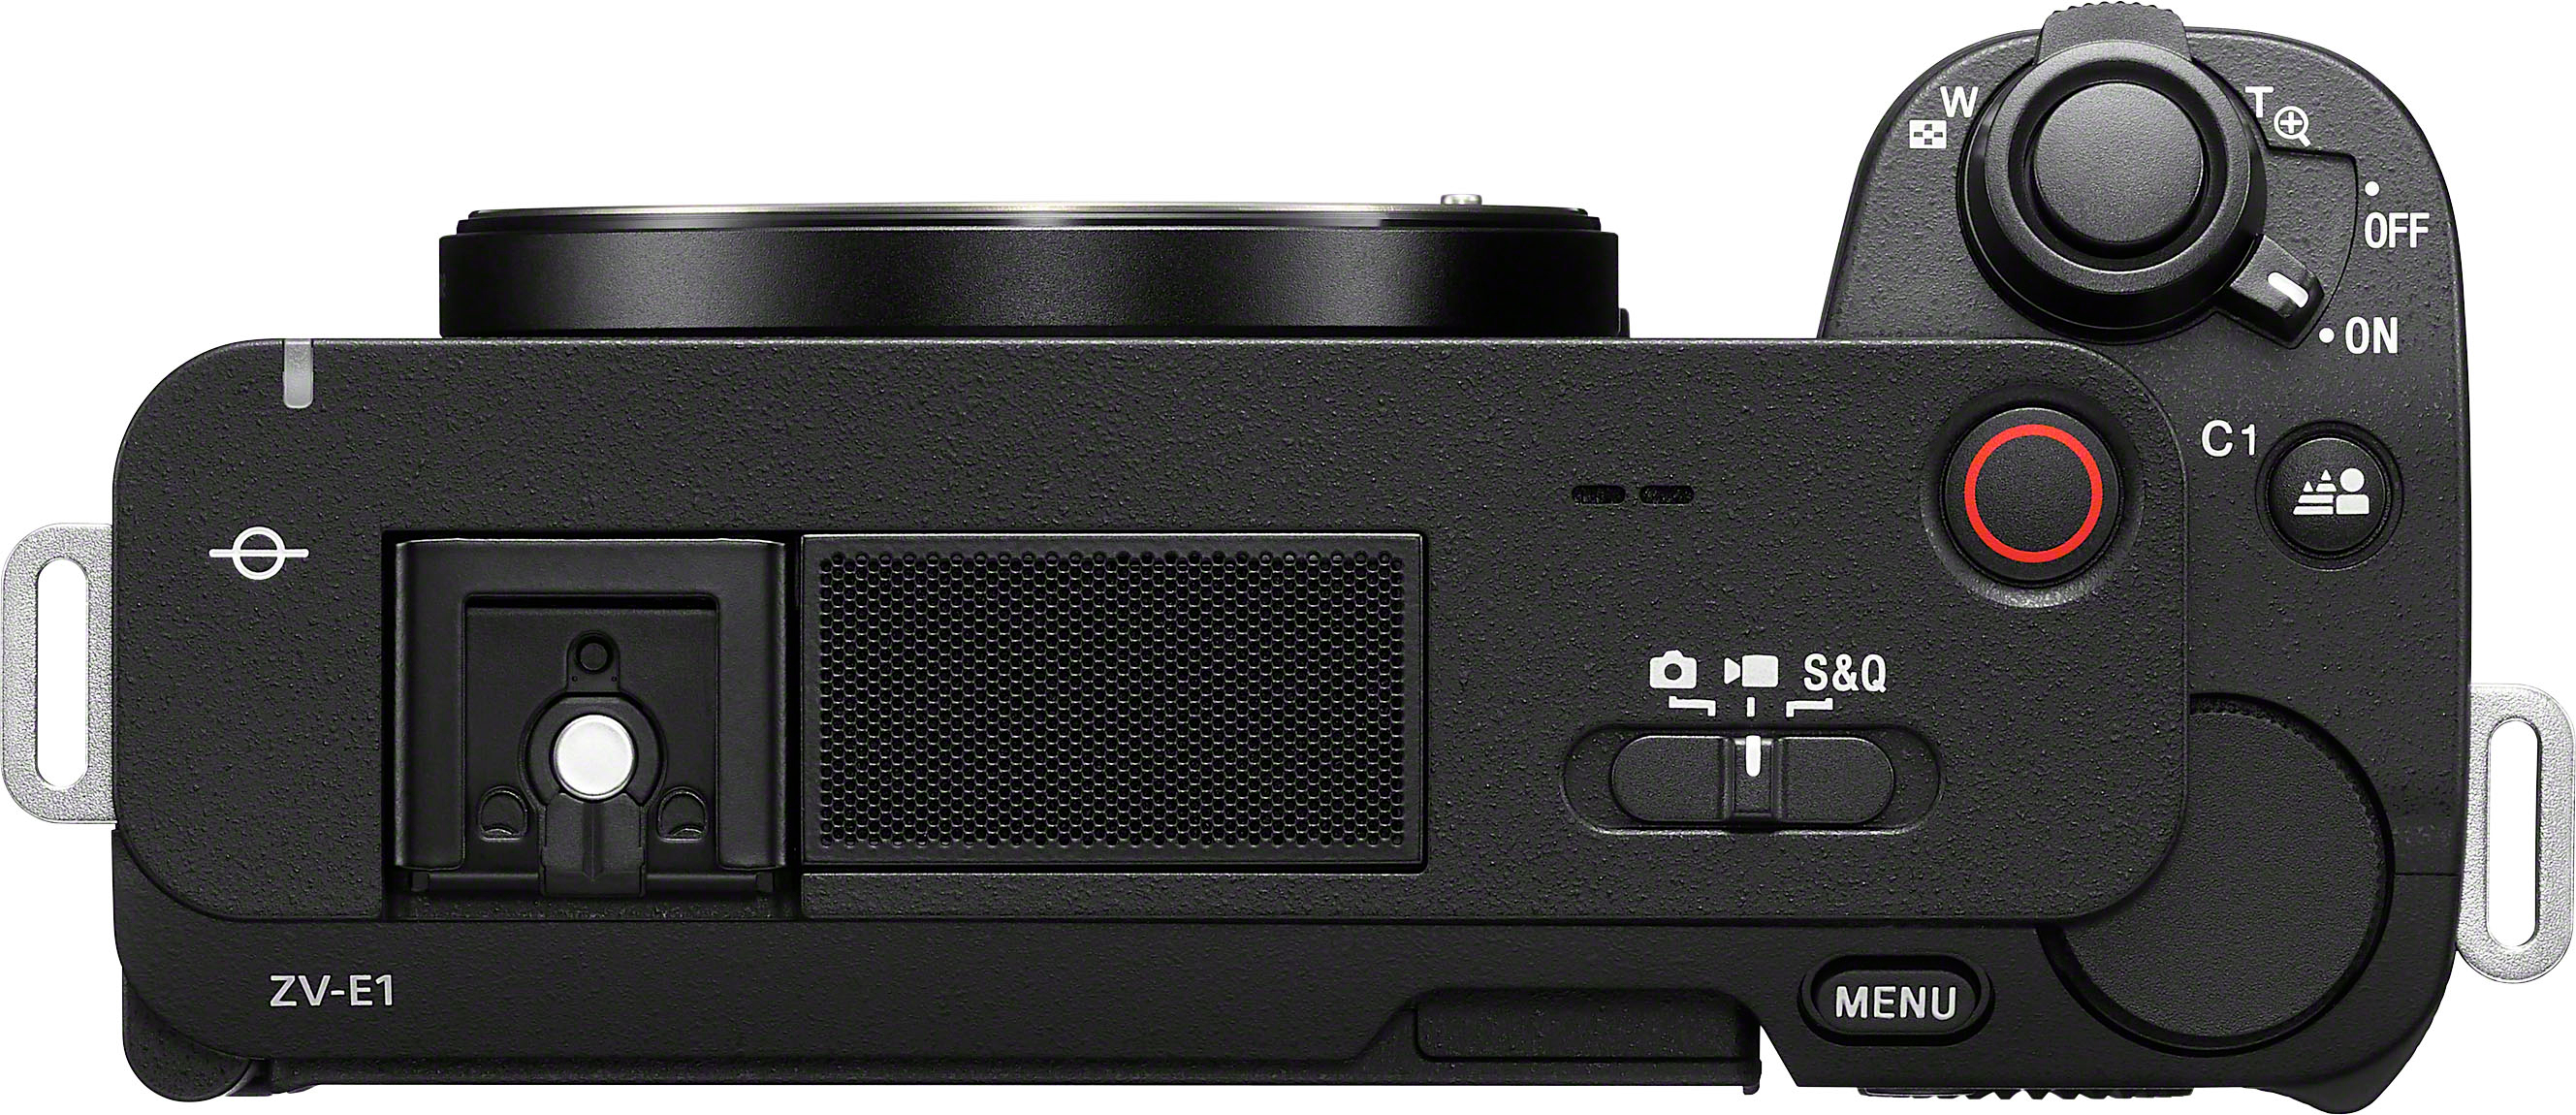 Prise en main de la caméra de vlogging ZV-E1 de Sony - digitec